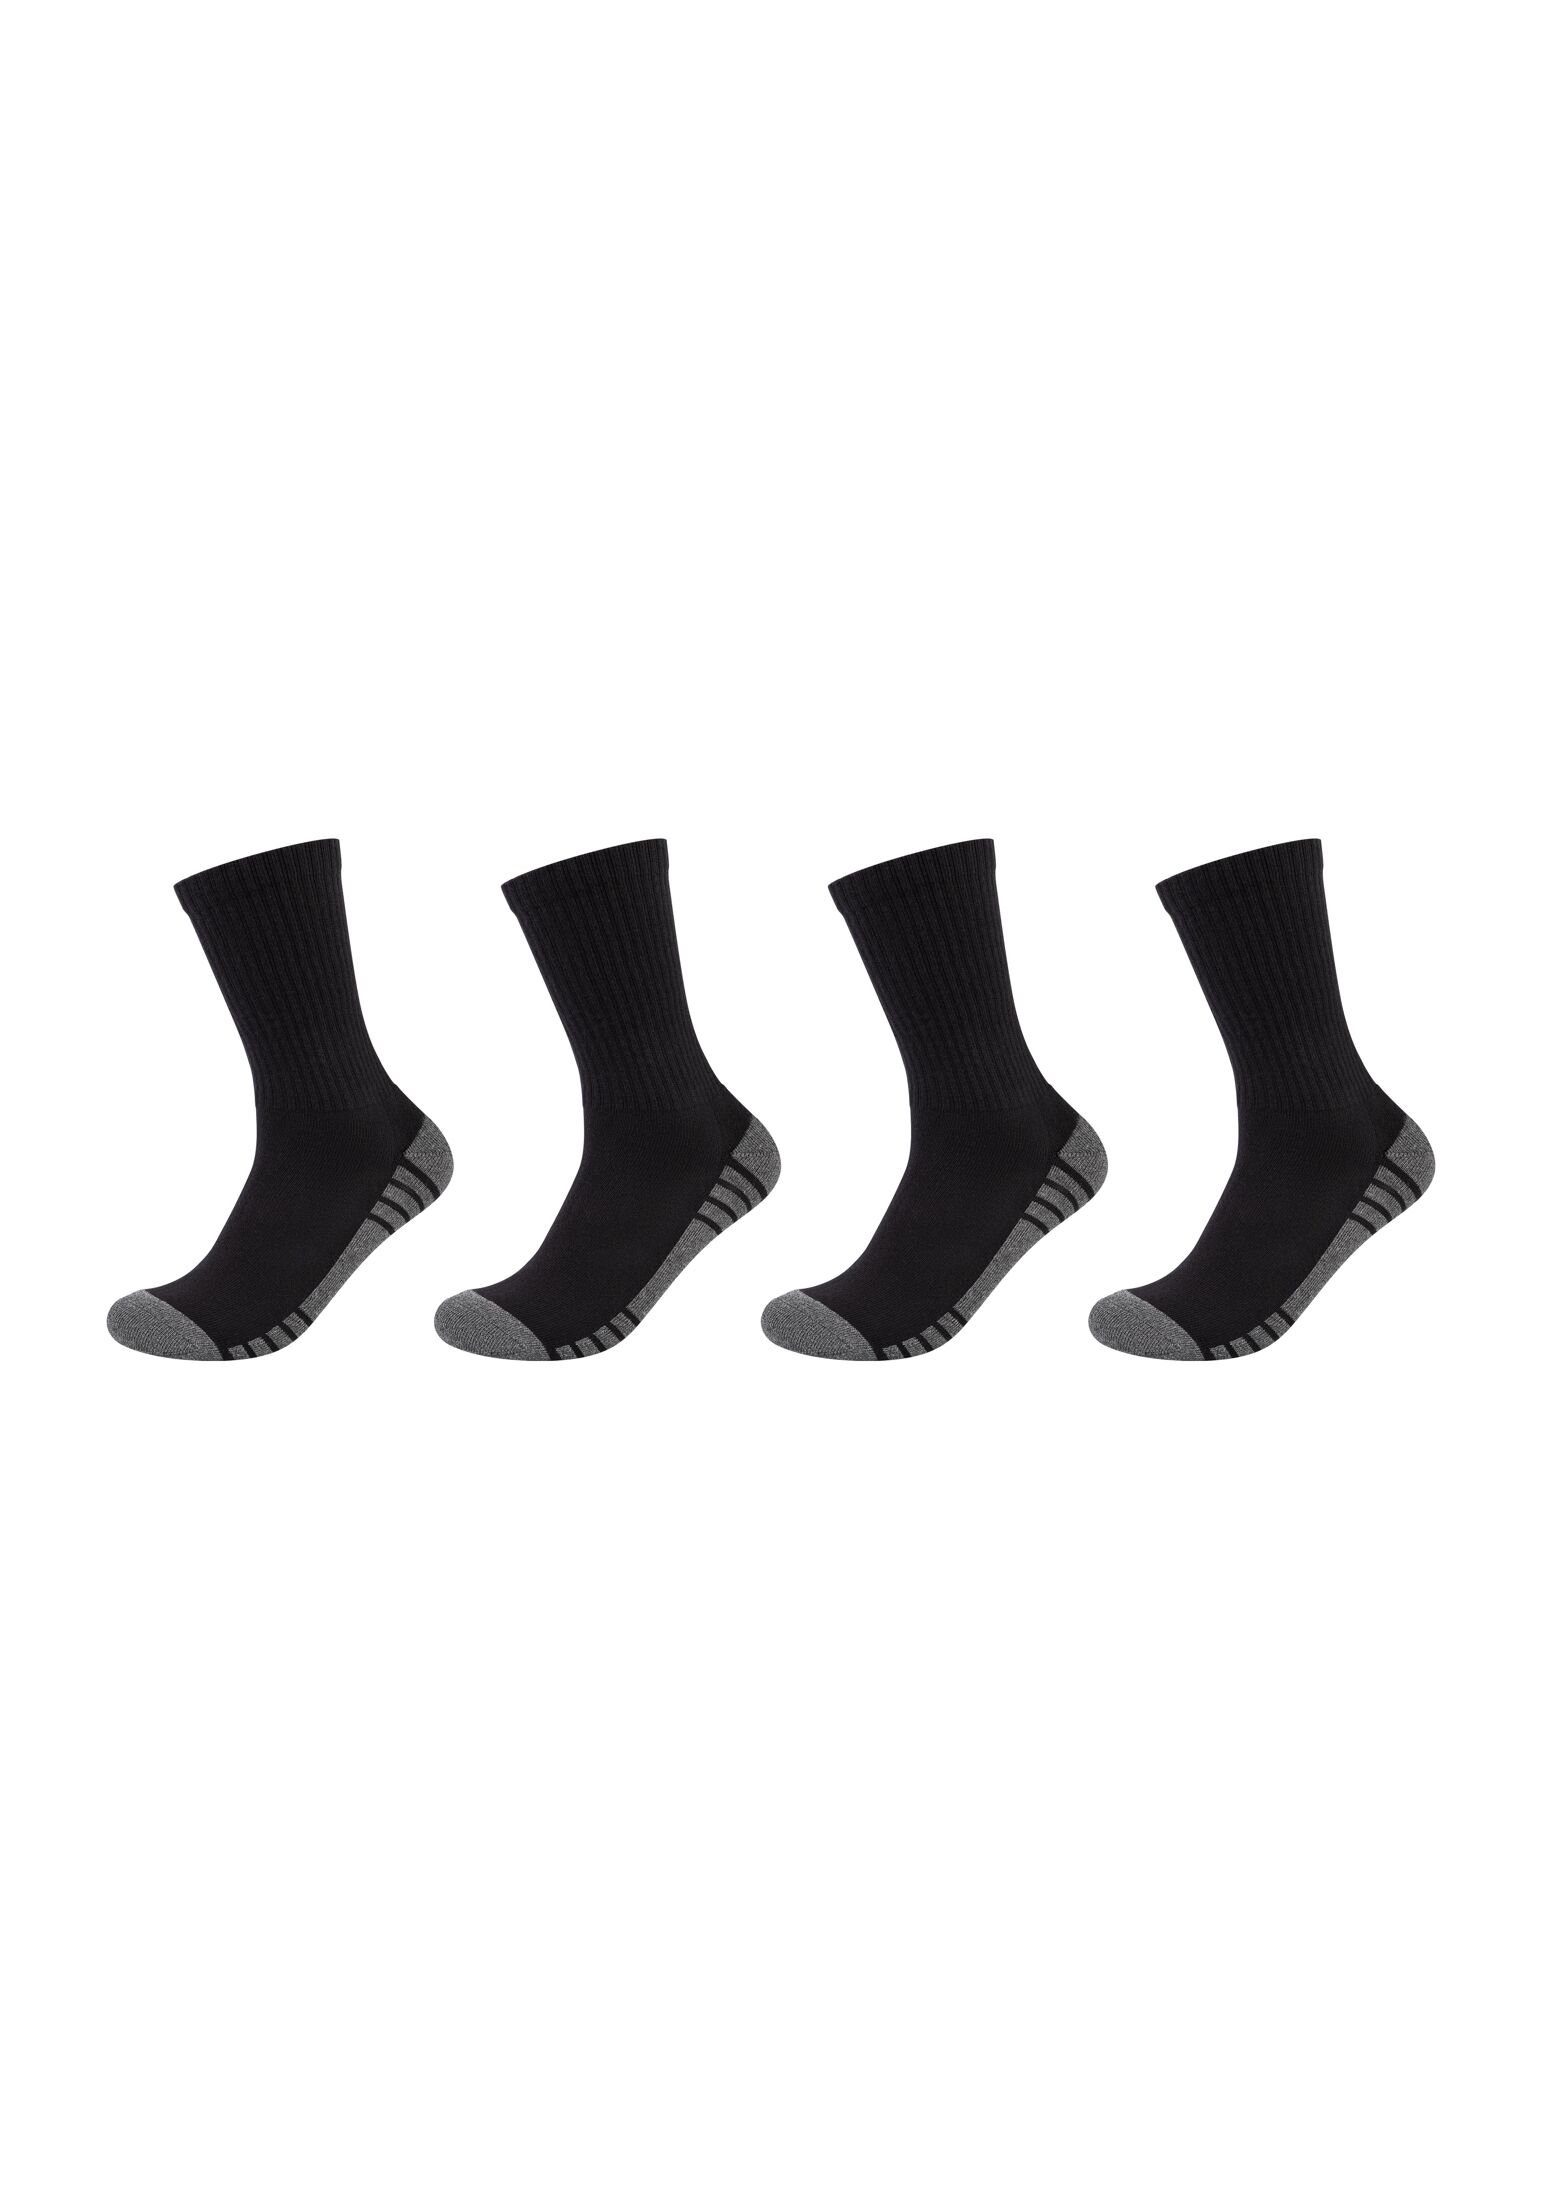 Skechers Socken Tennissocken 4er Pack black mix | Socken